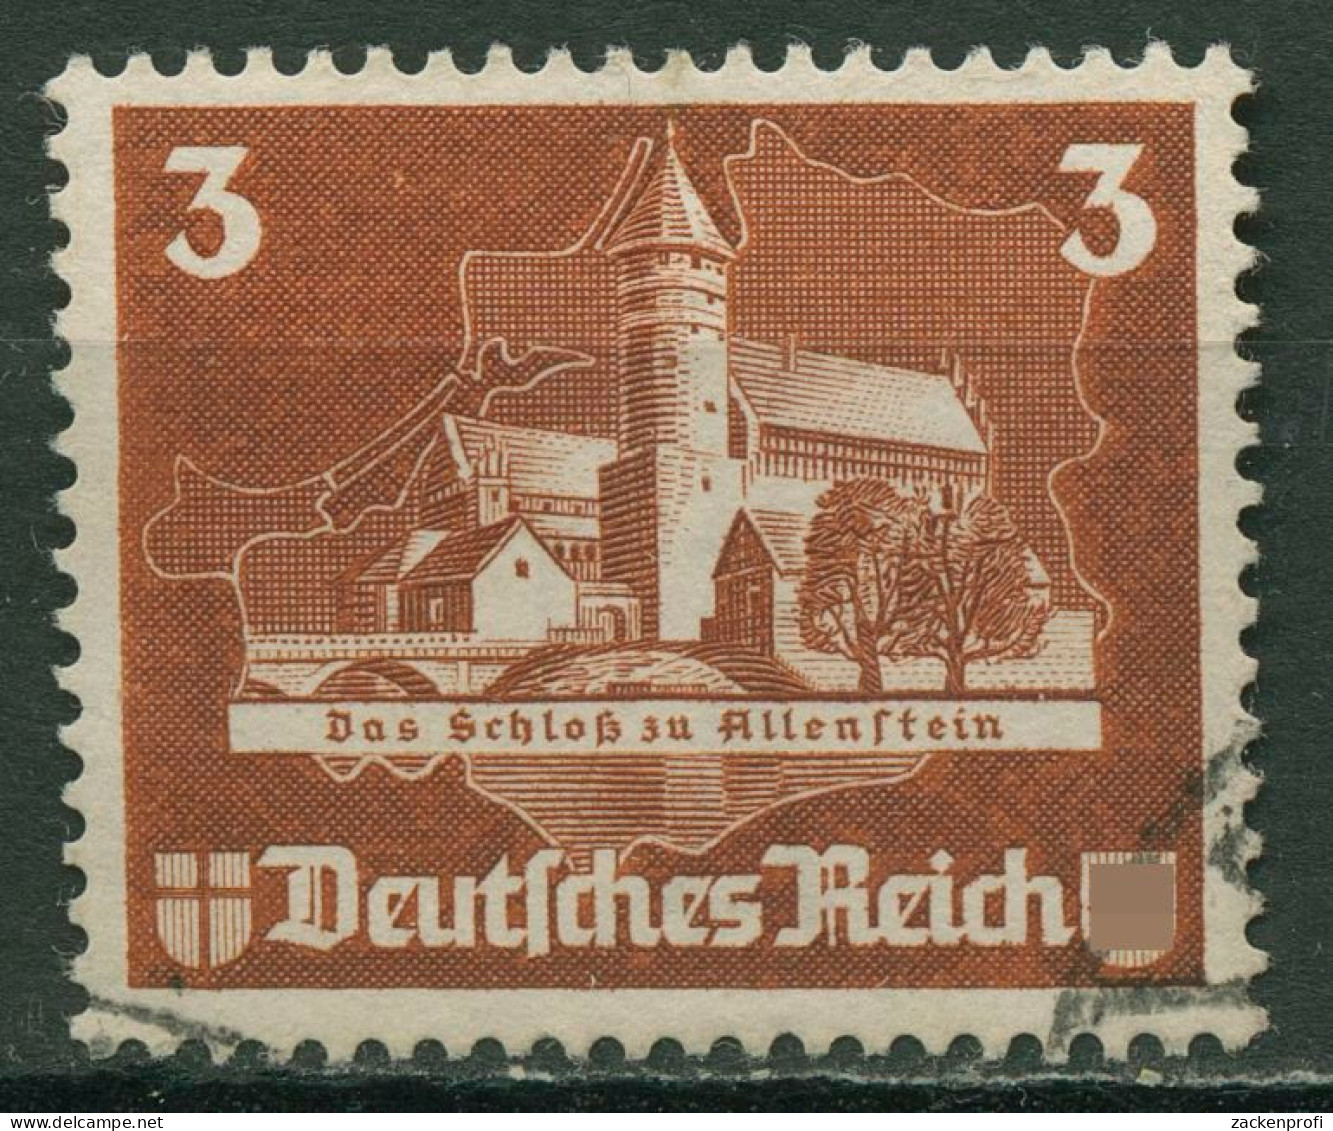 Deutsches Reich 1935 Einzelmarke Aus OSTROPA-Block 576 Gestempelt - Usati